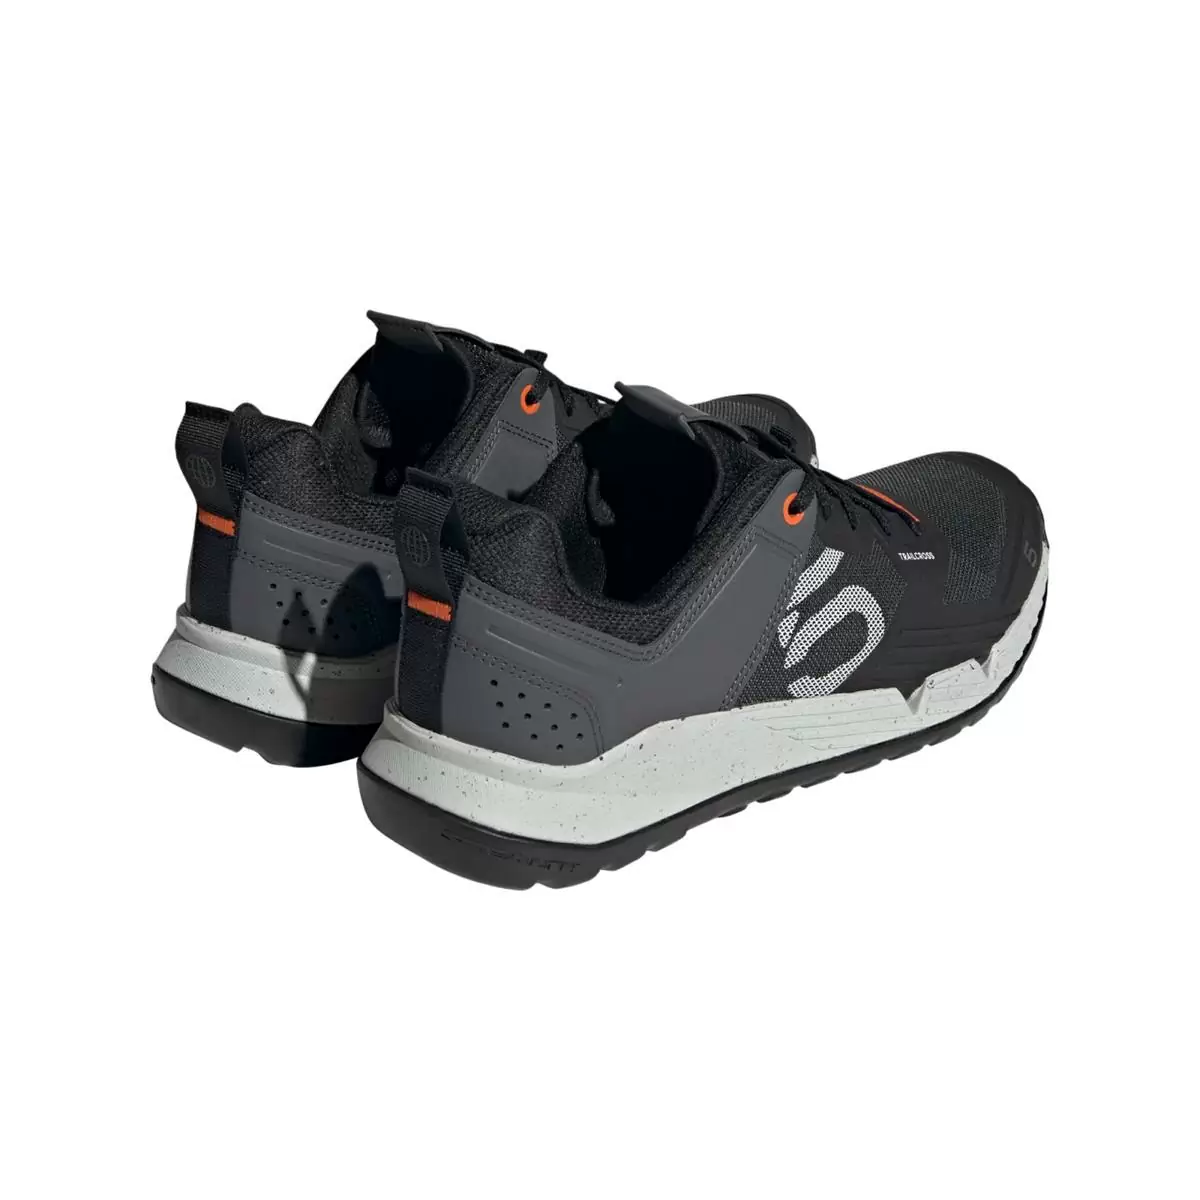 Chaussures VTT 5.10 Trailcross XT Flat Noir/Gris Taille 42.5 #5